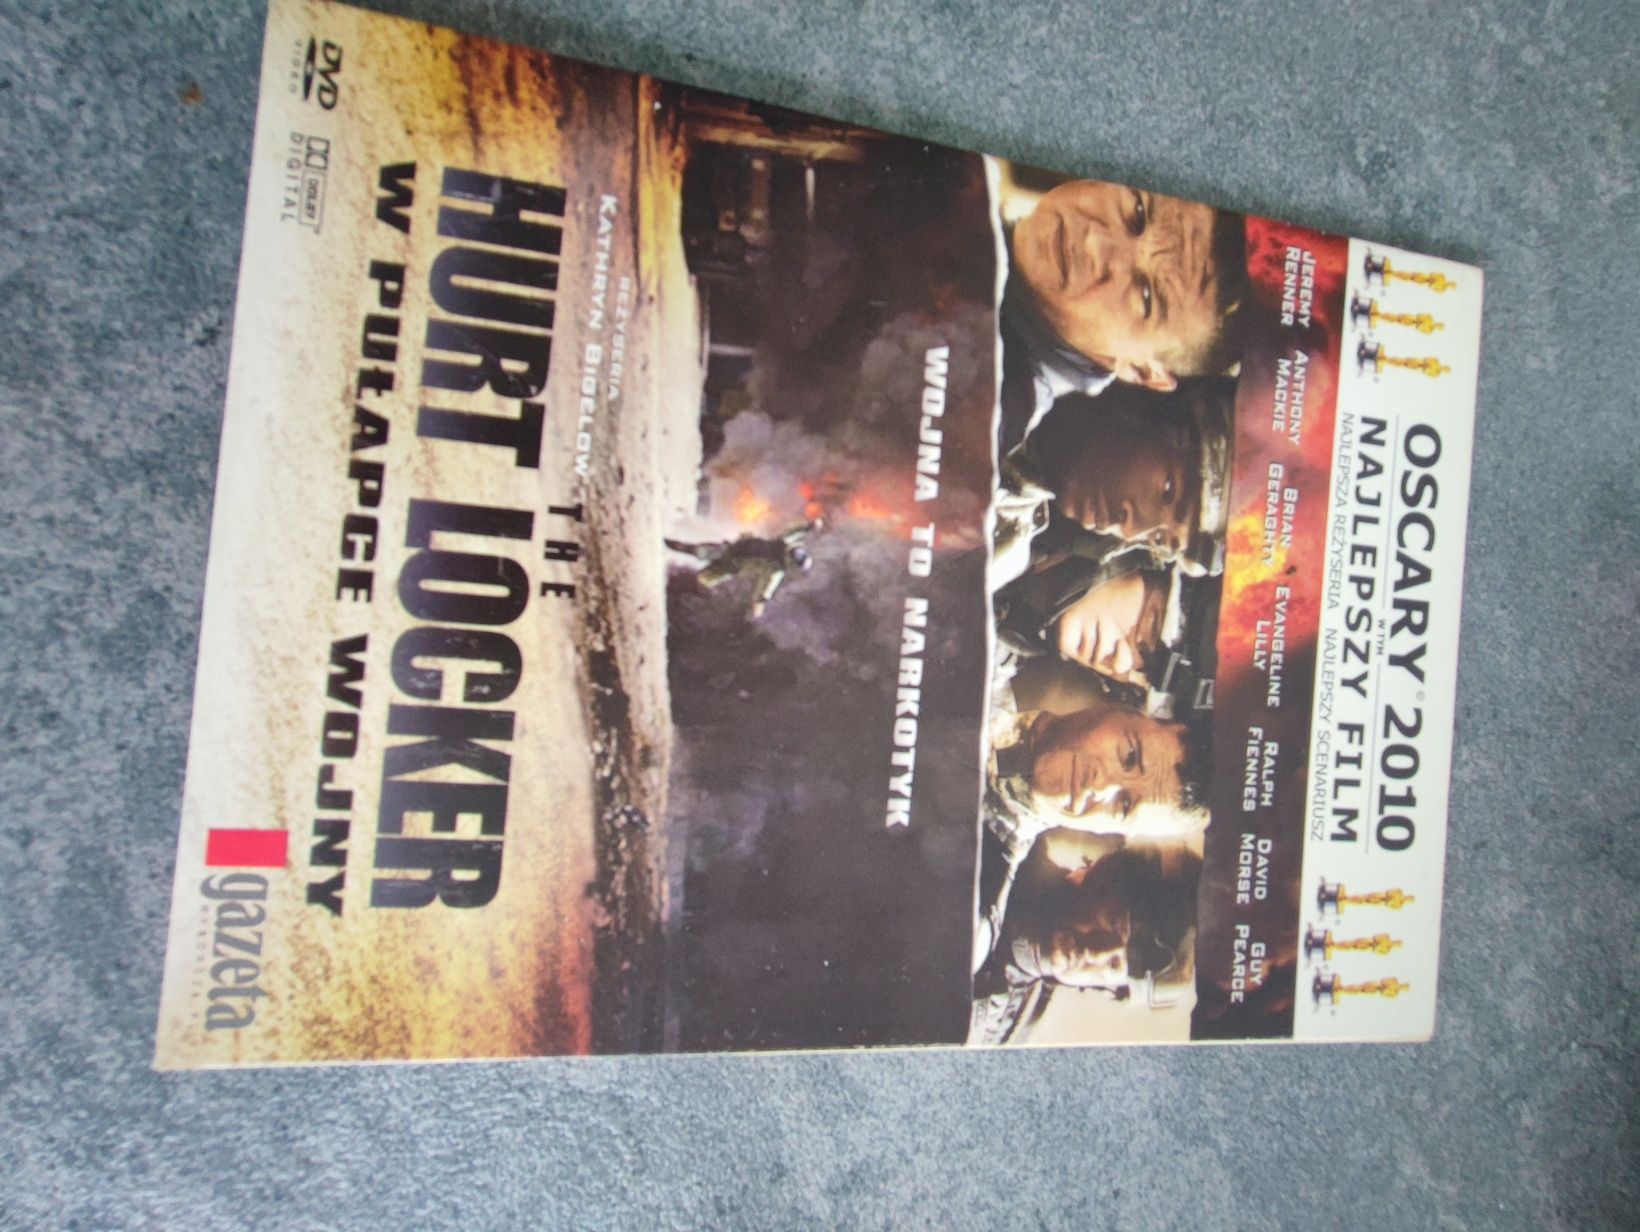 Płyta DVD "W pułapce wojny"